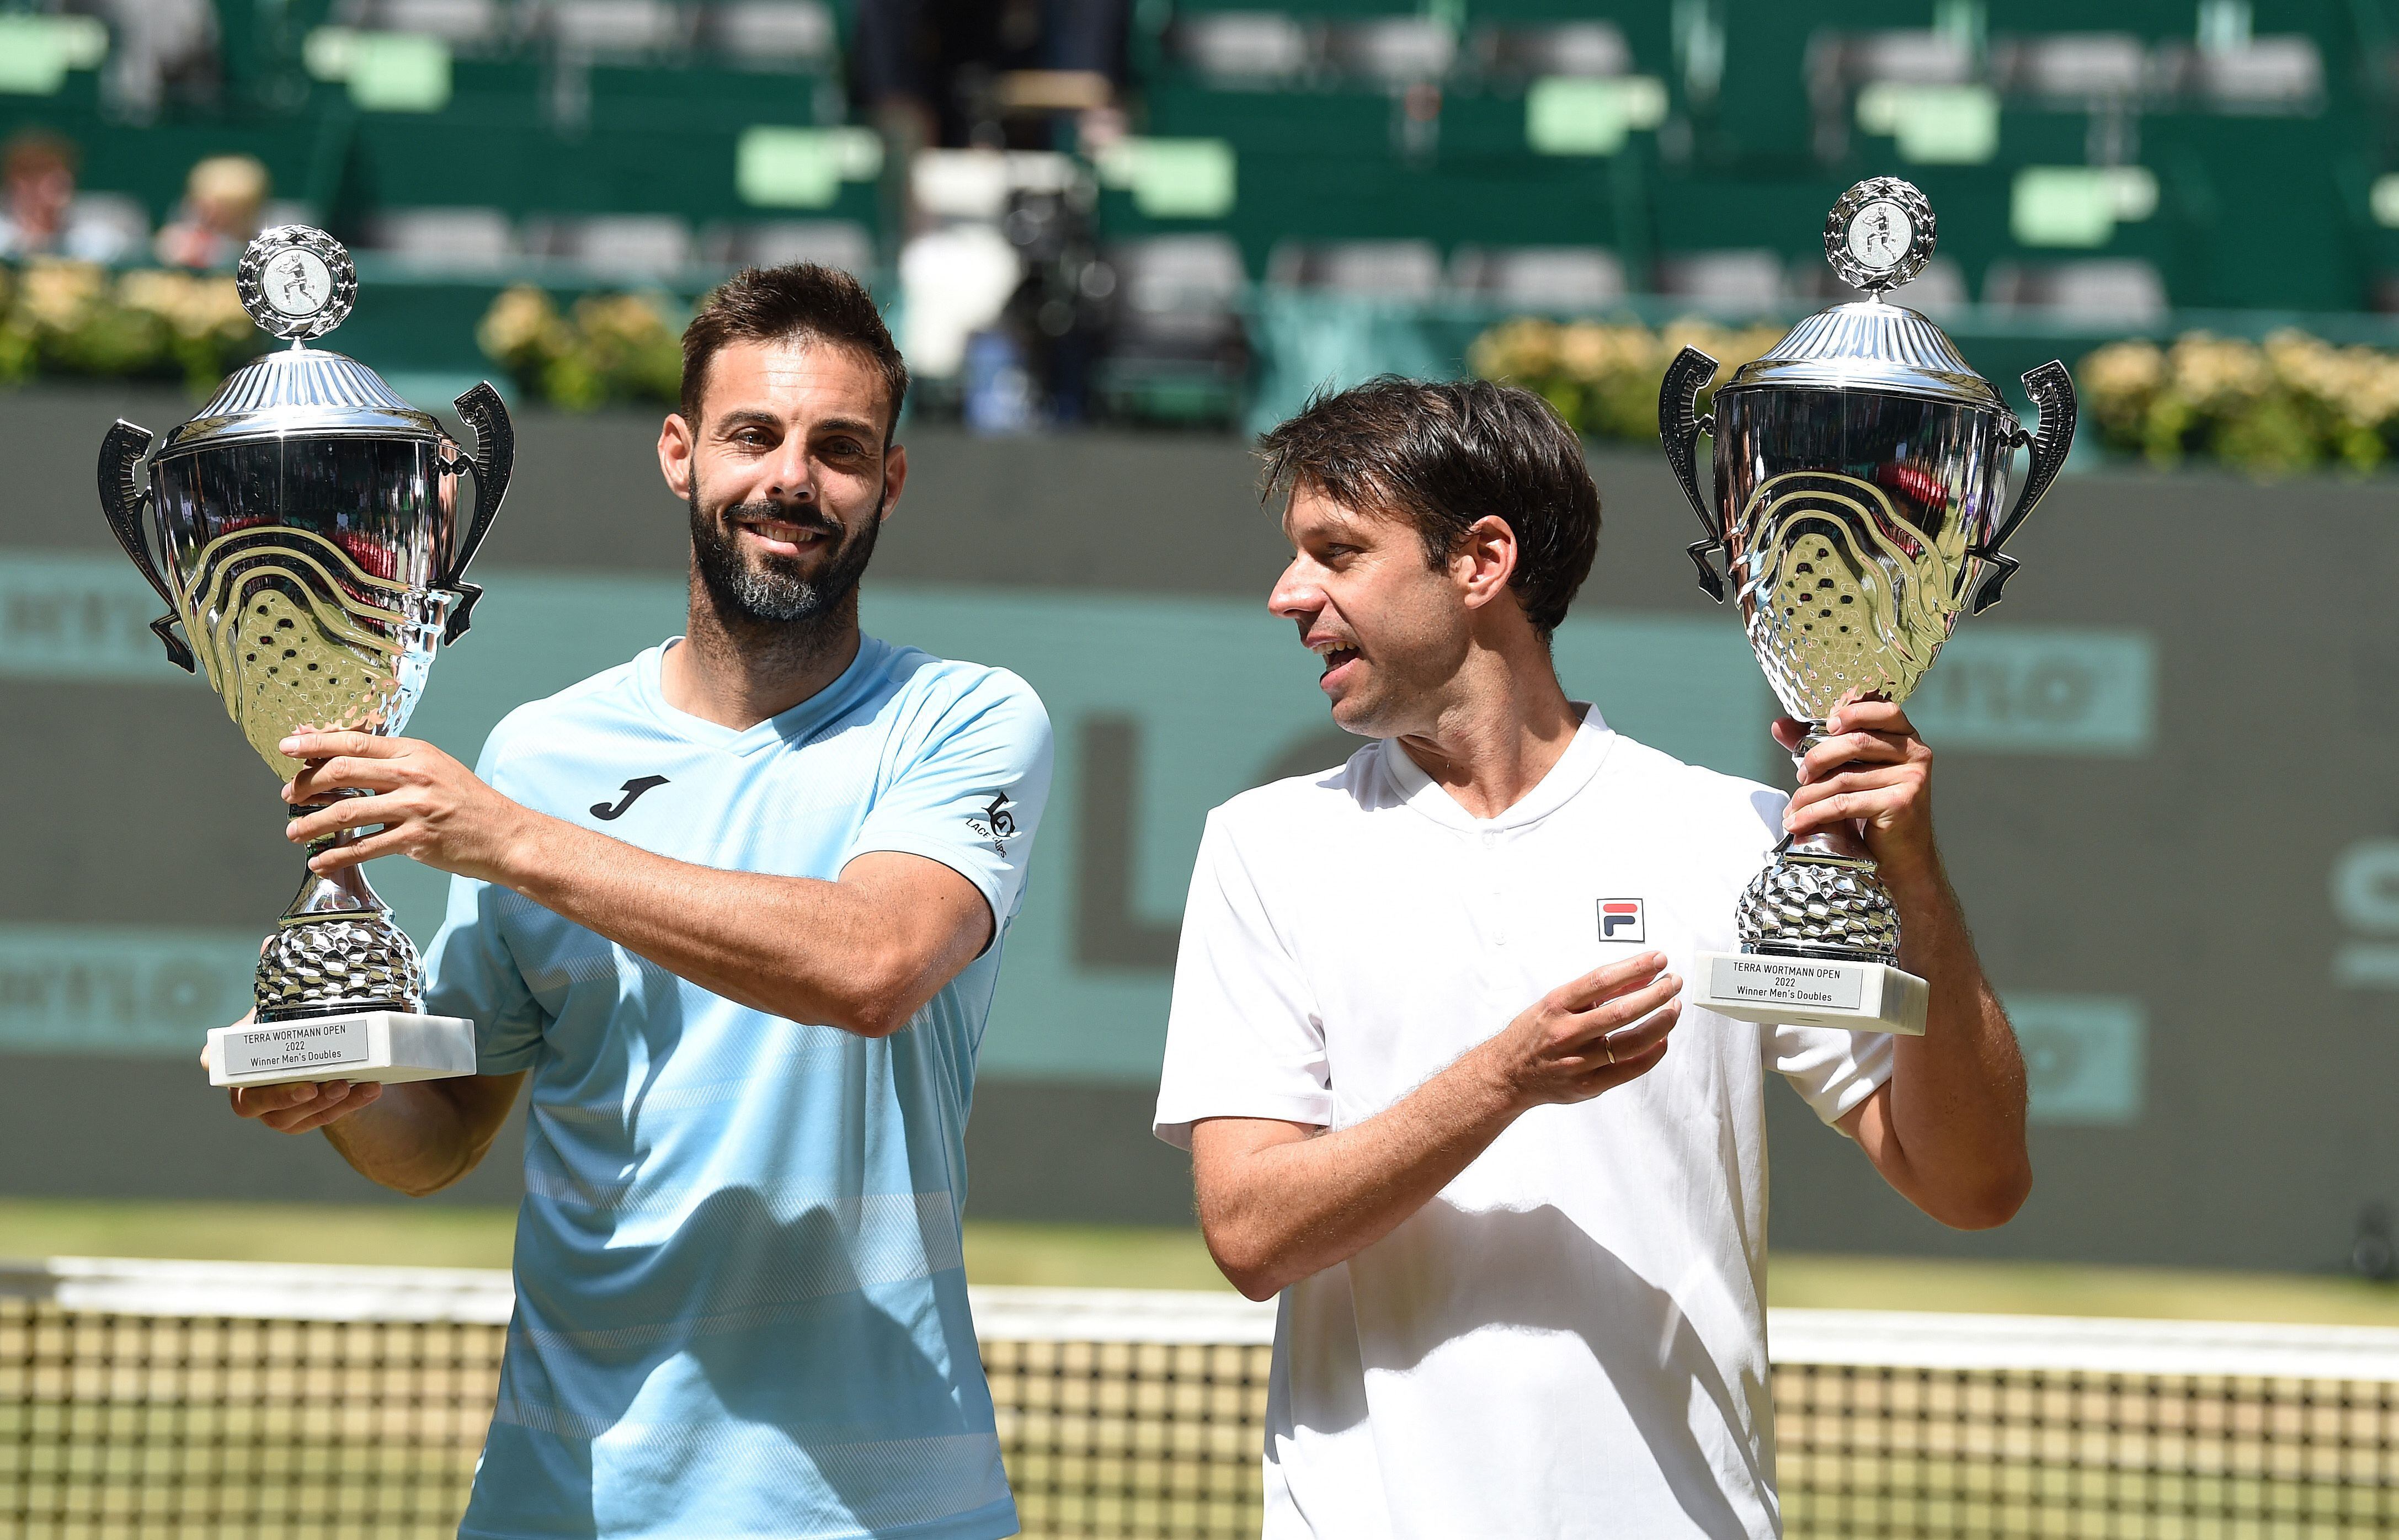 Horacio Zeballos y Marcel Granollers, campeones de dobles sobre el césped del ATP de Halle, un gran impulso con miras a Wimbledon